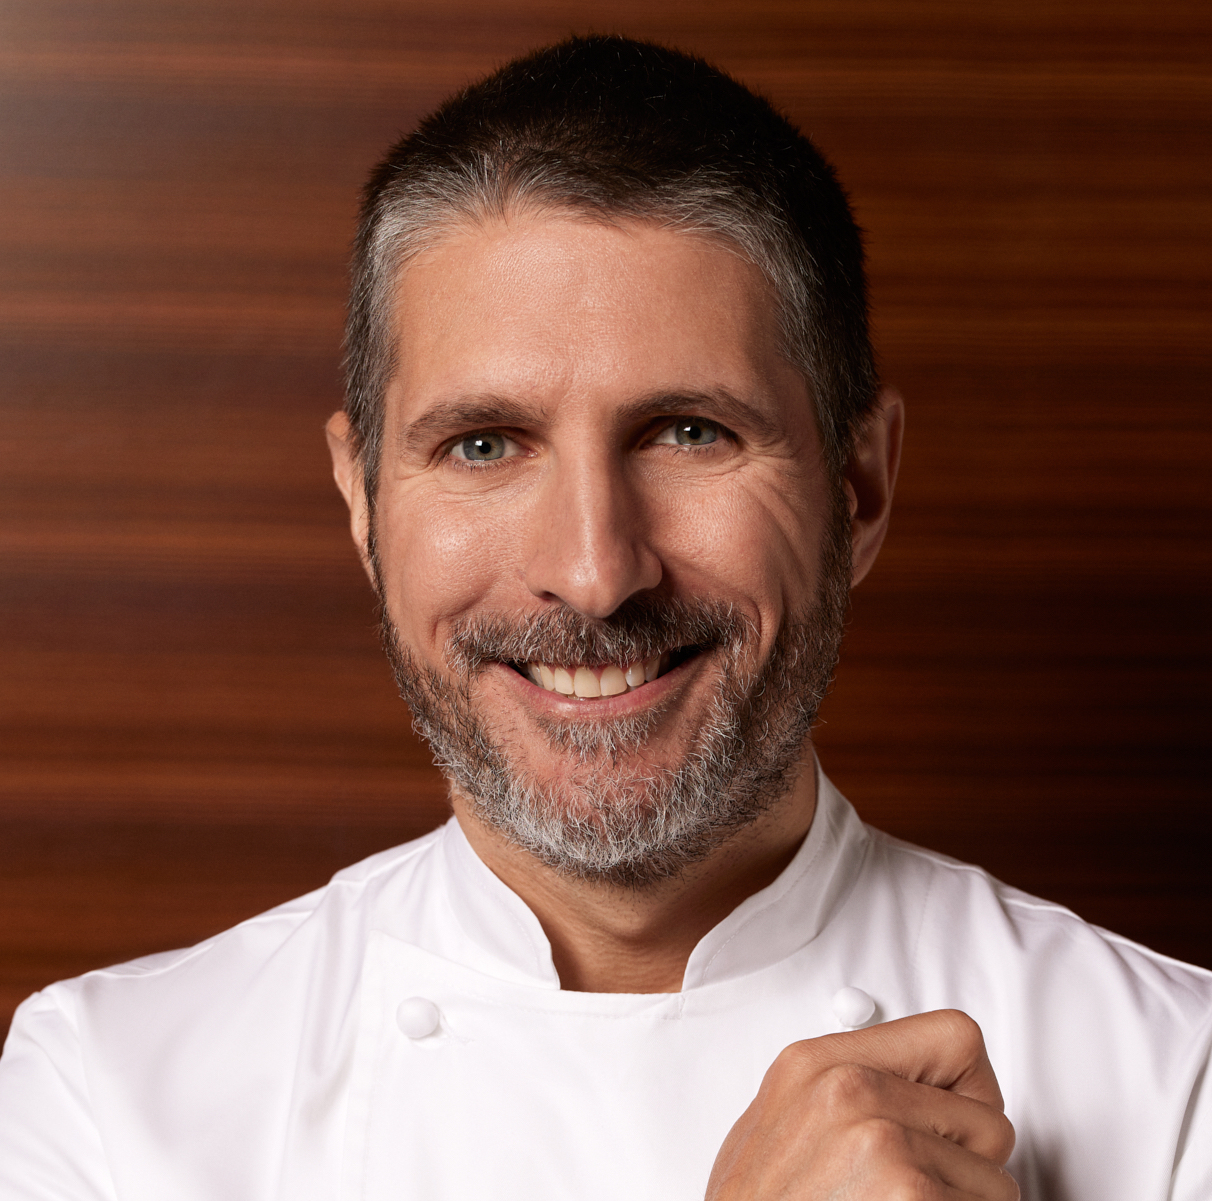 hotel chef Sebastian La Rocca, executive chef at Hilton Columbus Downtown